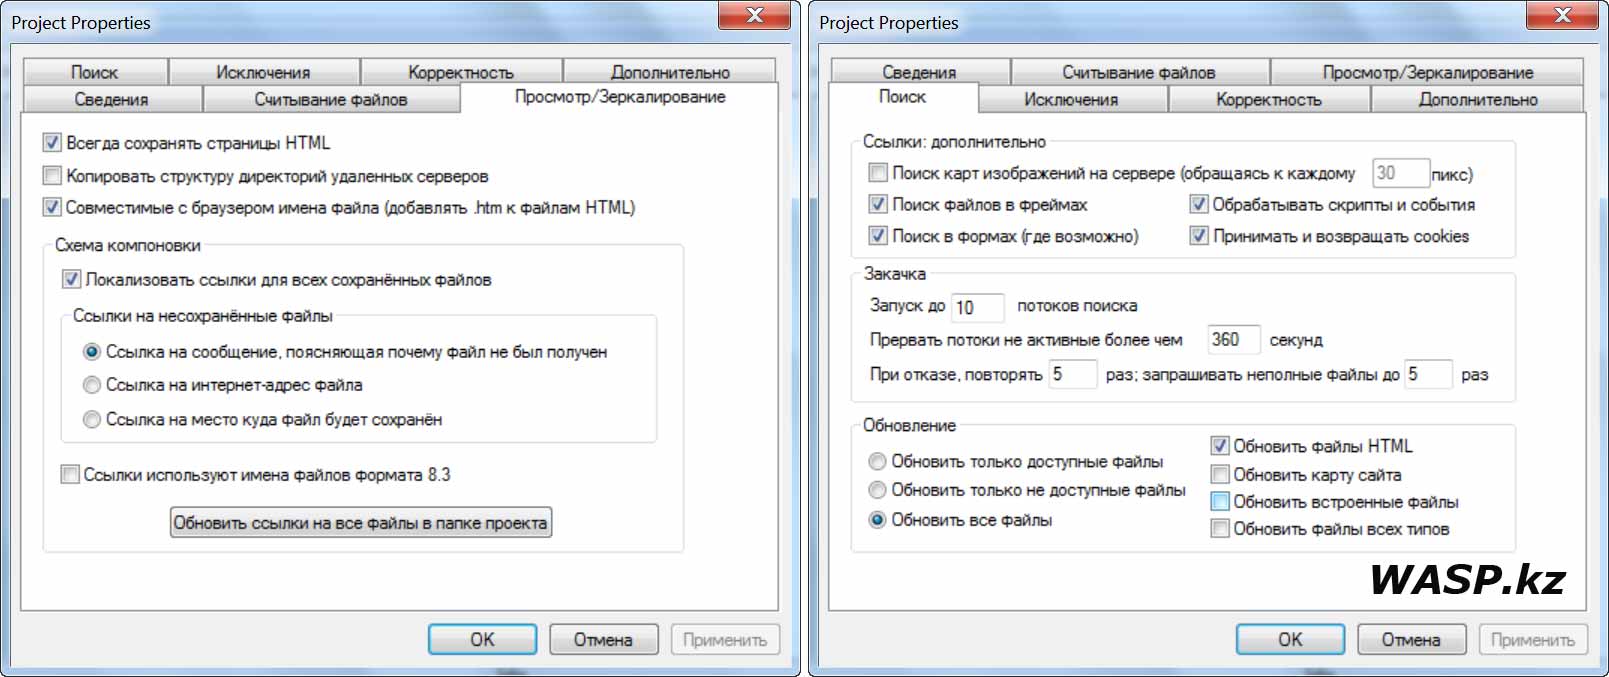 Teleport Pro 1.72 настройки проекта и русификатор